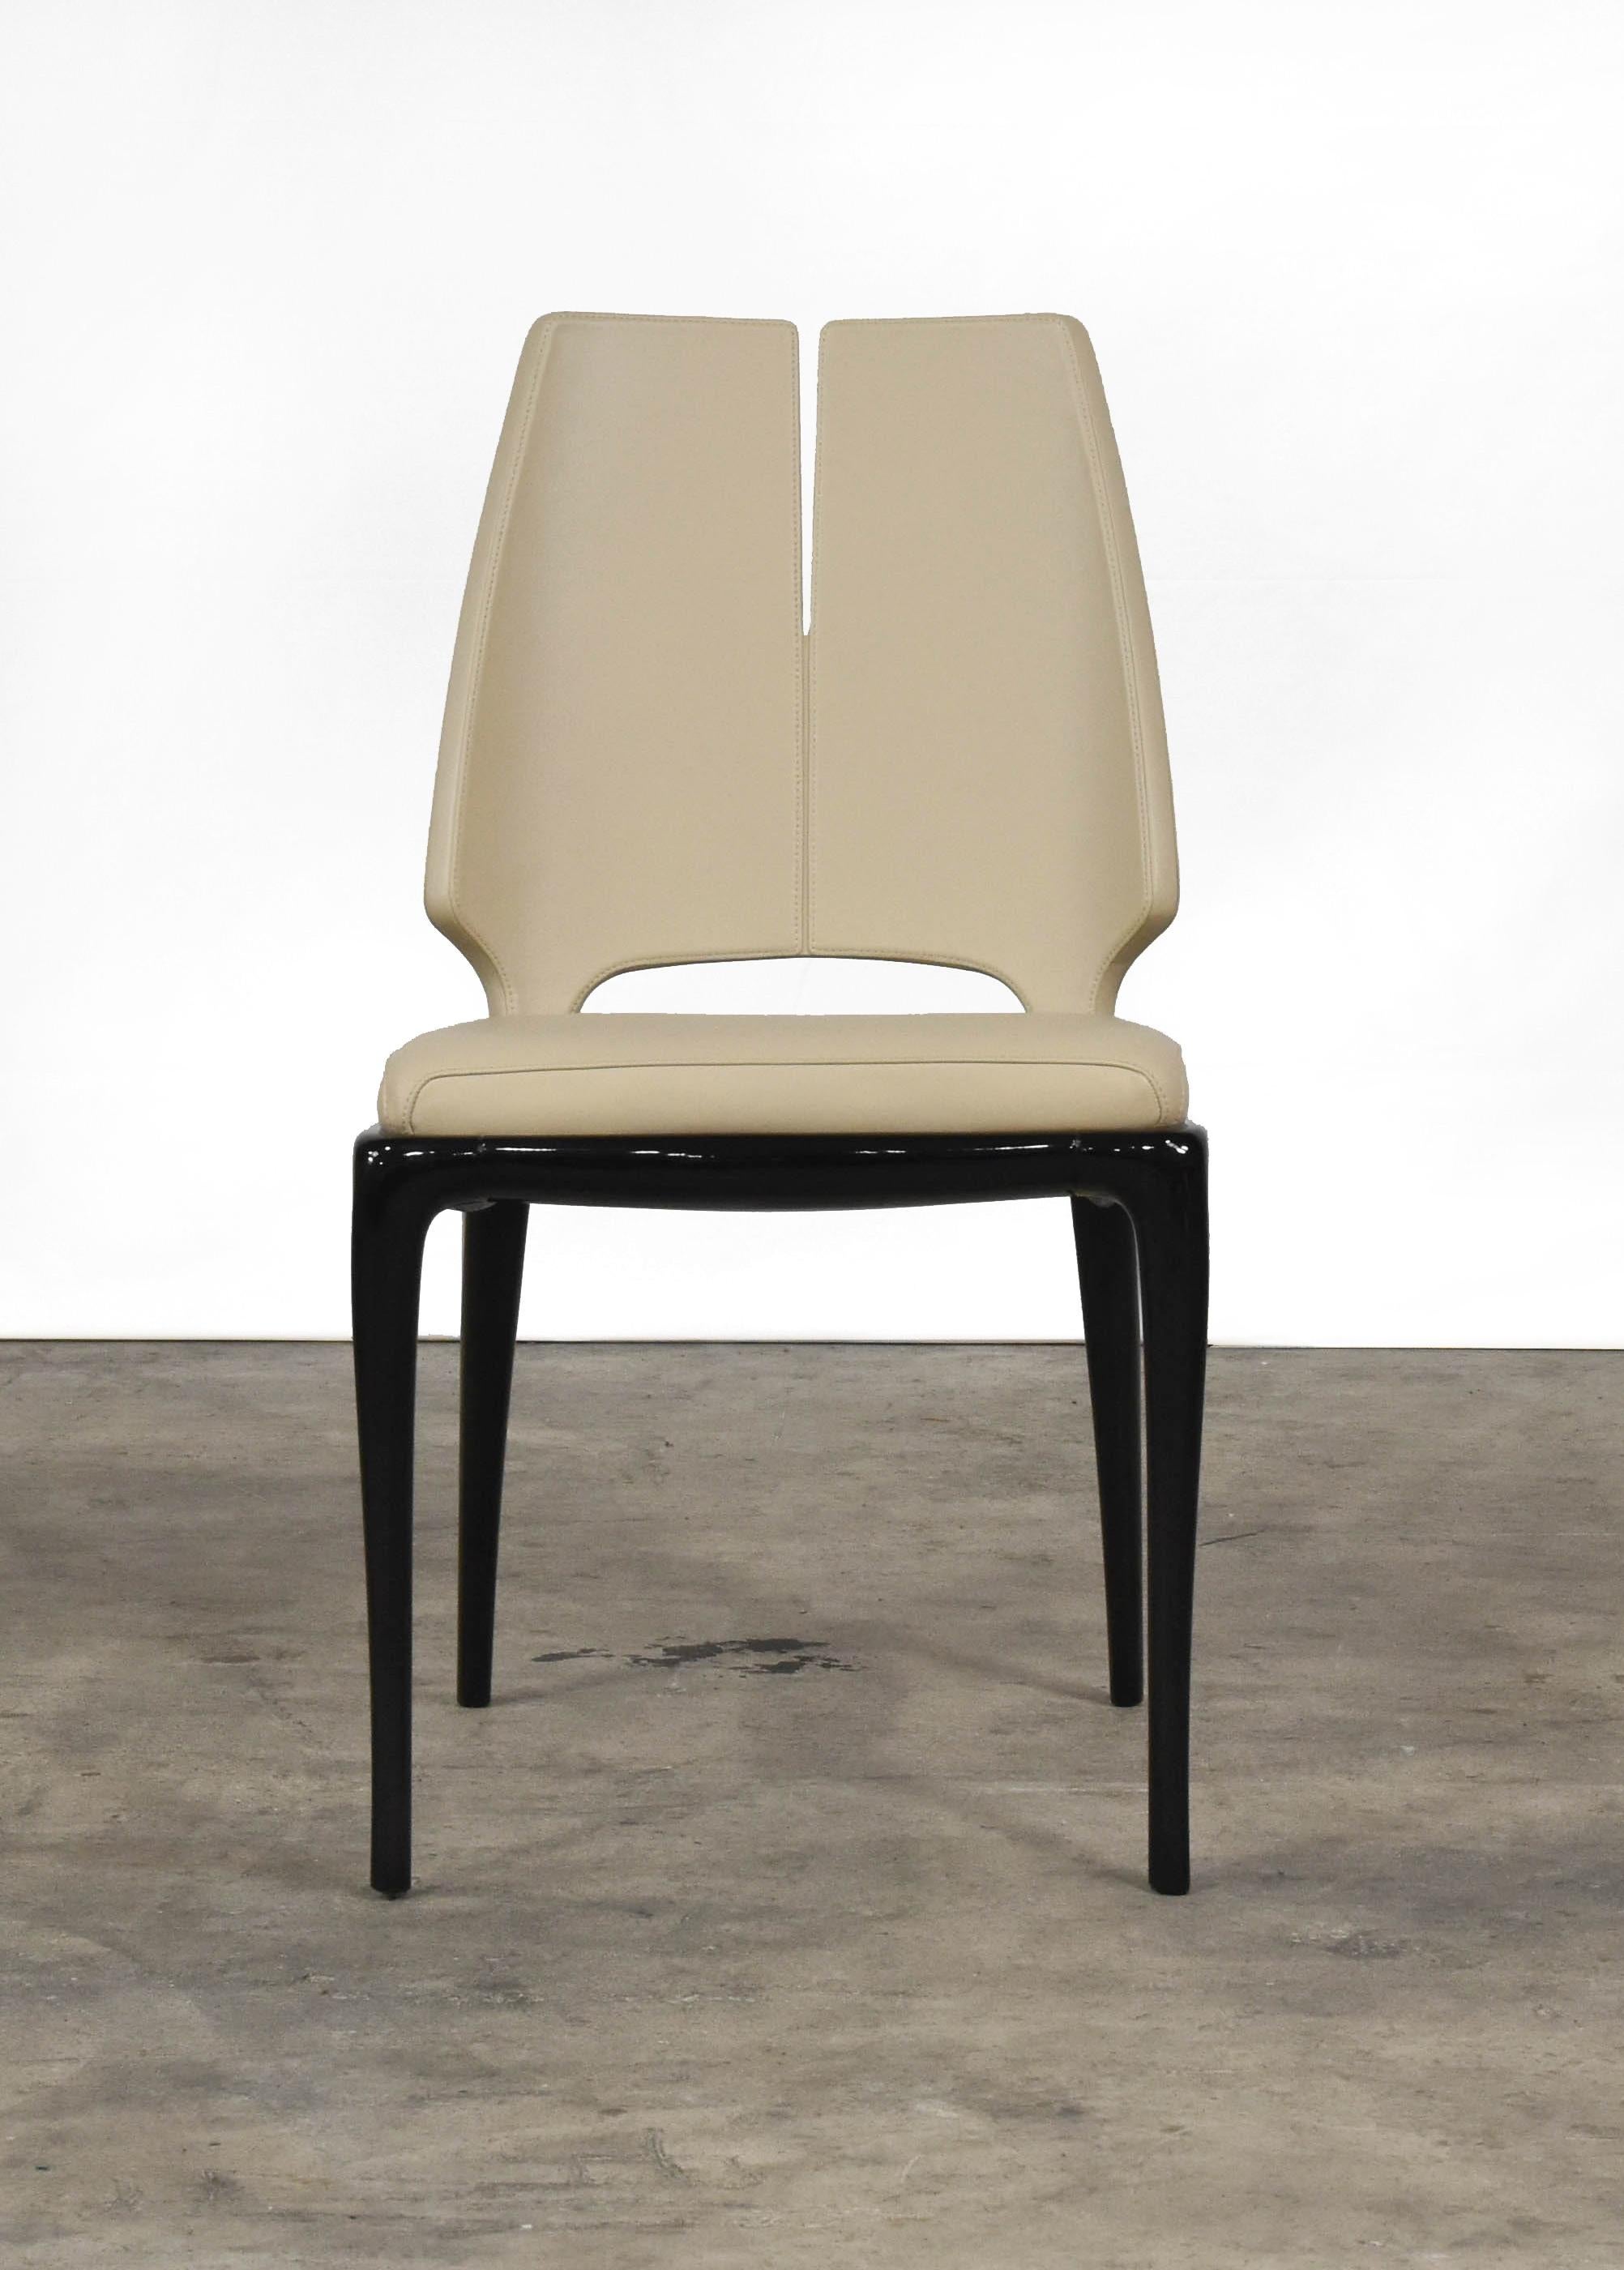 Der schlanke und raffinierte Stuhl Contour von Paul Mathieu für Luxury Living verbindet einen nüchternen Geist mit zeitgenössischem Geschmack. Er ist aus lackiertem Holz gefertigt und beherbergt das beigefarbene Lederkissen, das mit dem
polsterung